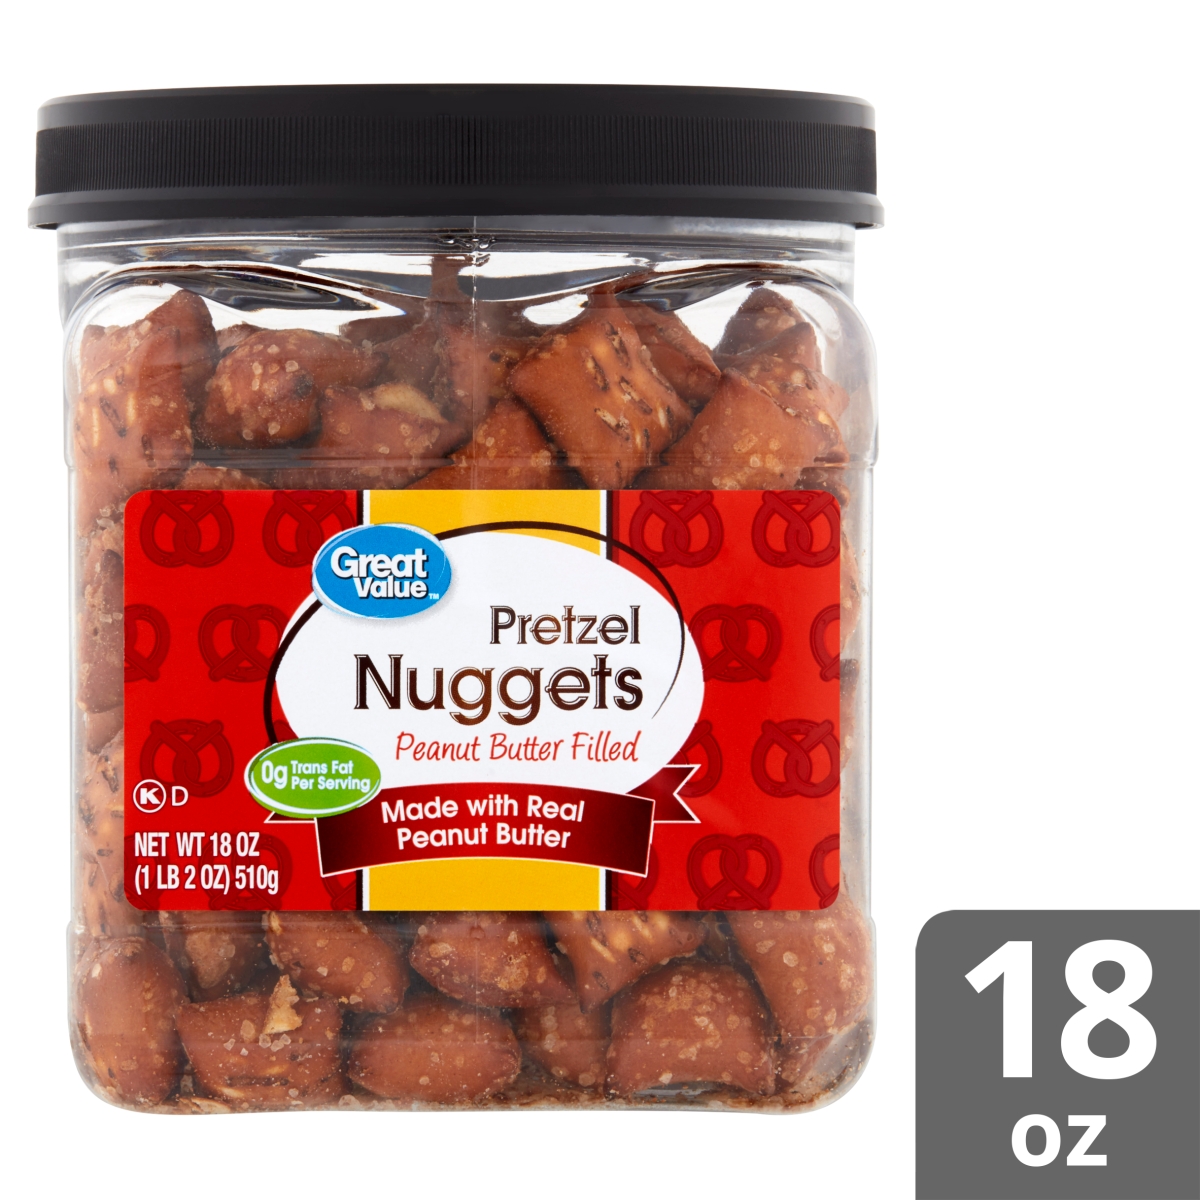 Great Value Peanut Butter Filled Pretzel Nuggets Canister 18 Oz